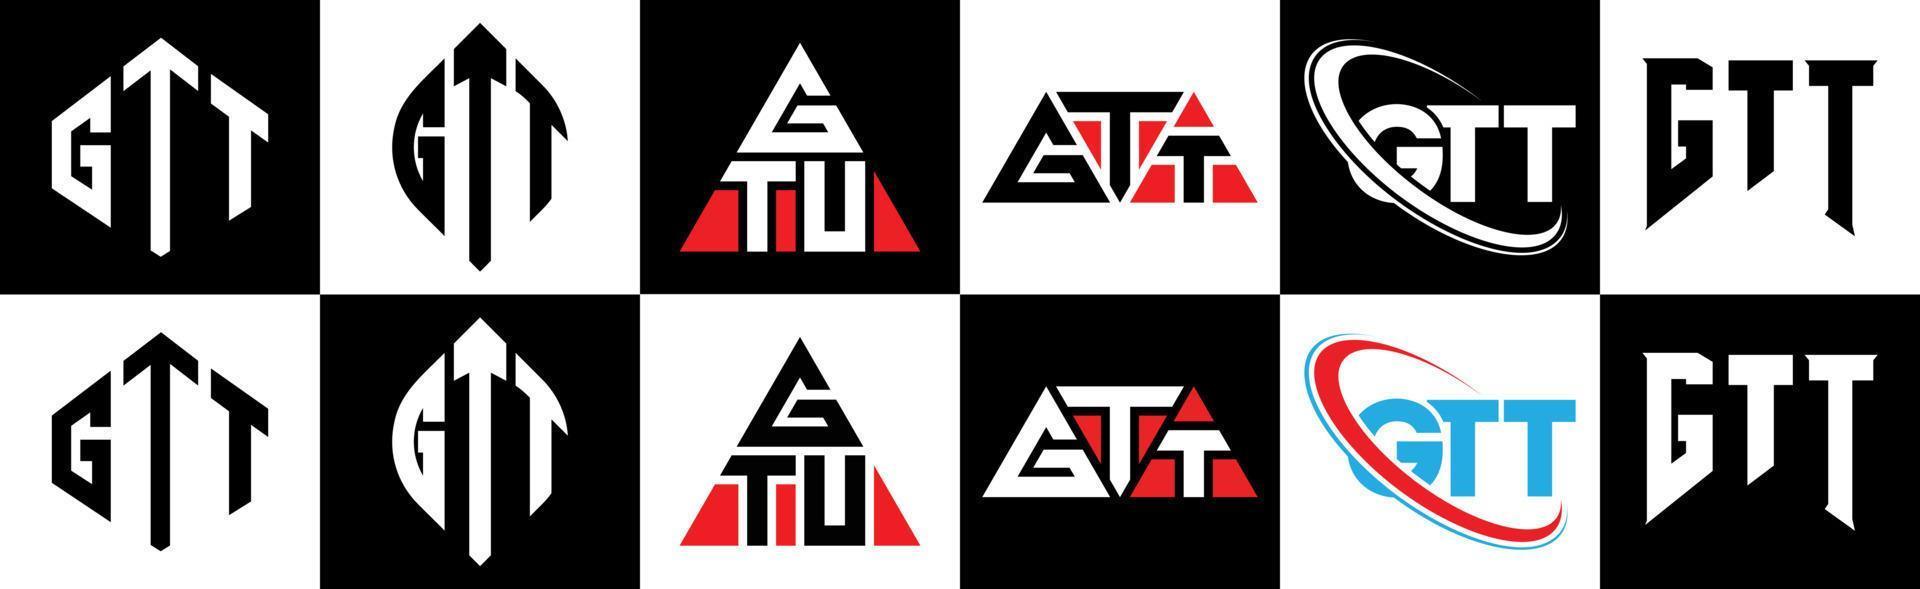 gtt-Buchstaben-Logo-Design in sechs Stilen. GTT-Polygon, Kreis, Dreieck, Sechseck, flacher und einfacher Stil mit schwarz-weißem Buchstabenlogo in einer Zeichenfläche. gtt minimalistisches und klassisches logo vektor